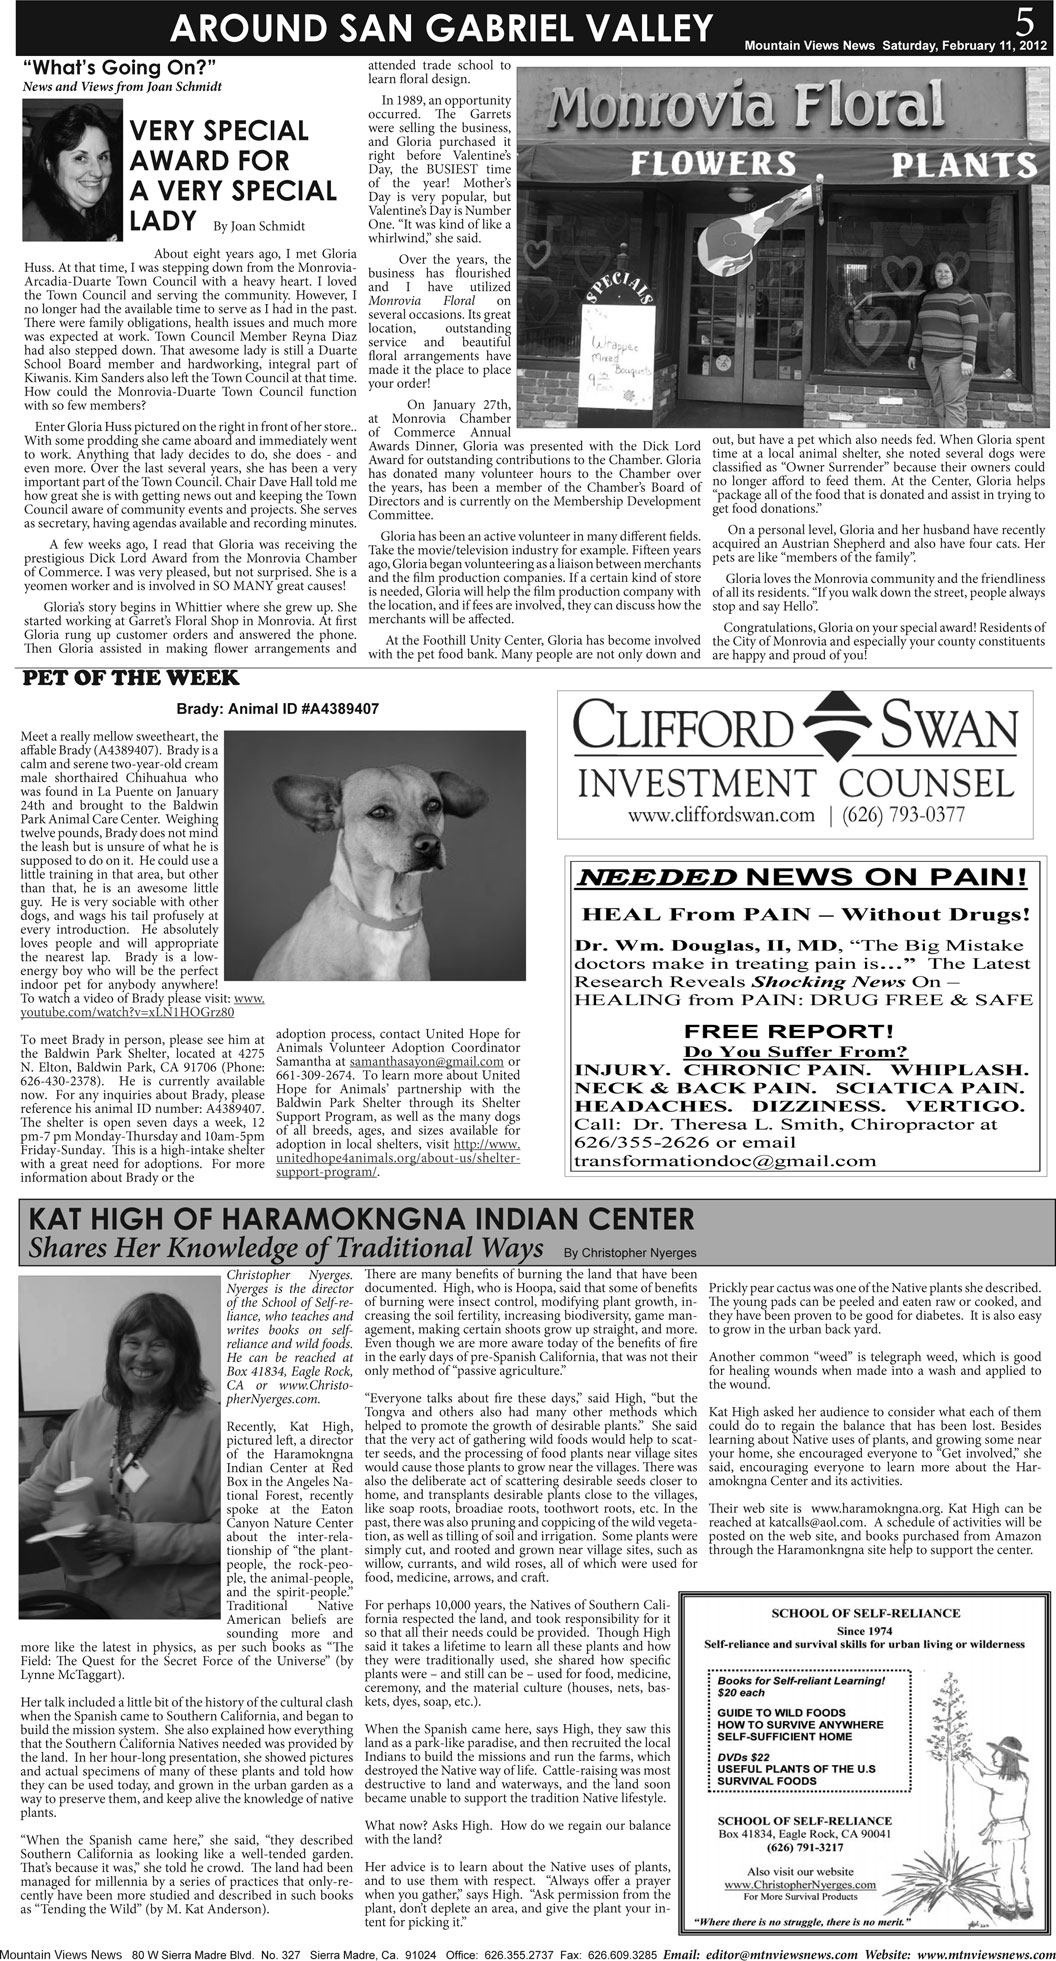 MVNews this week:  Page 5